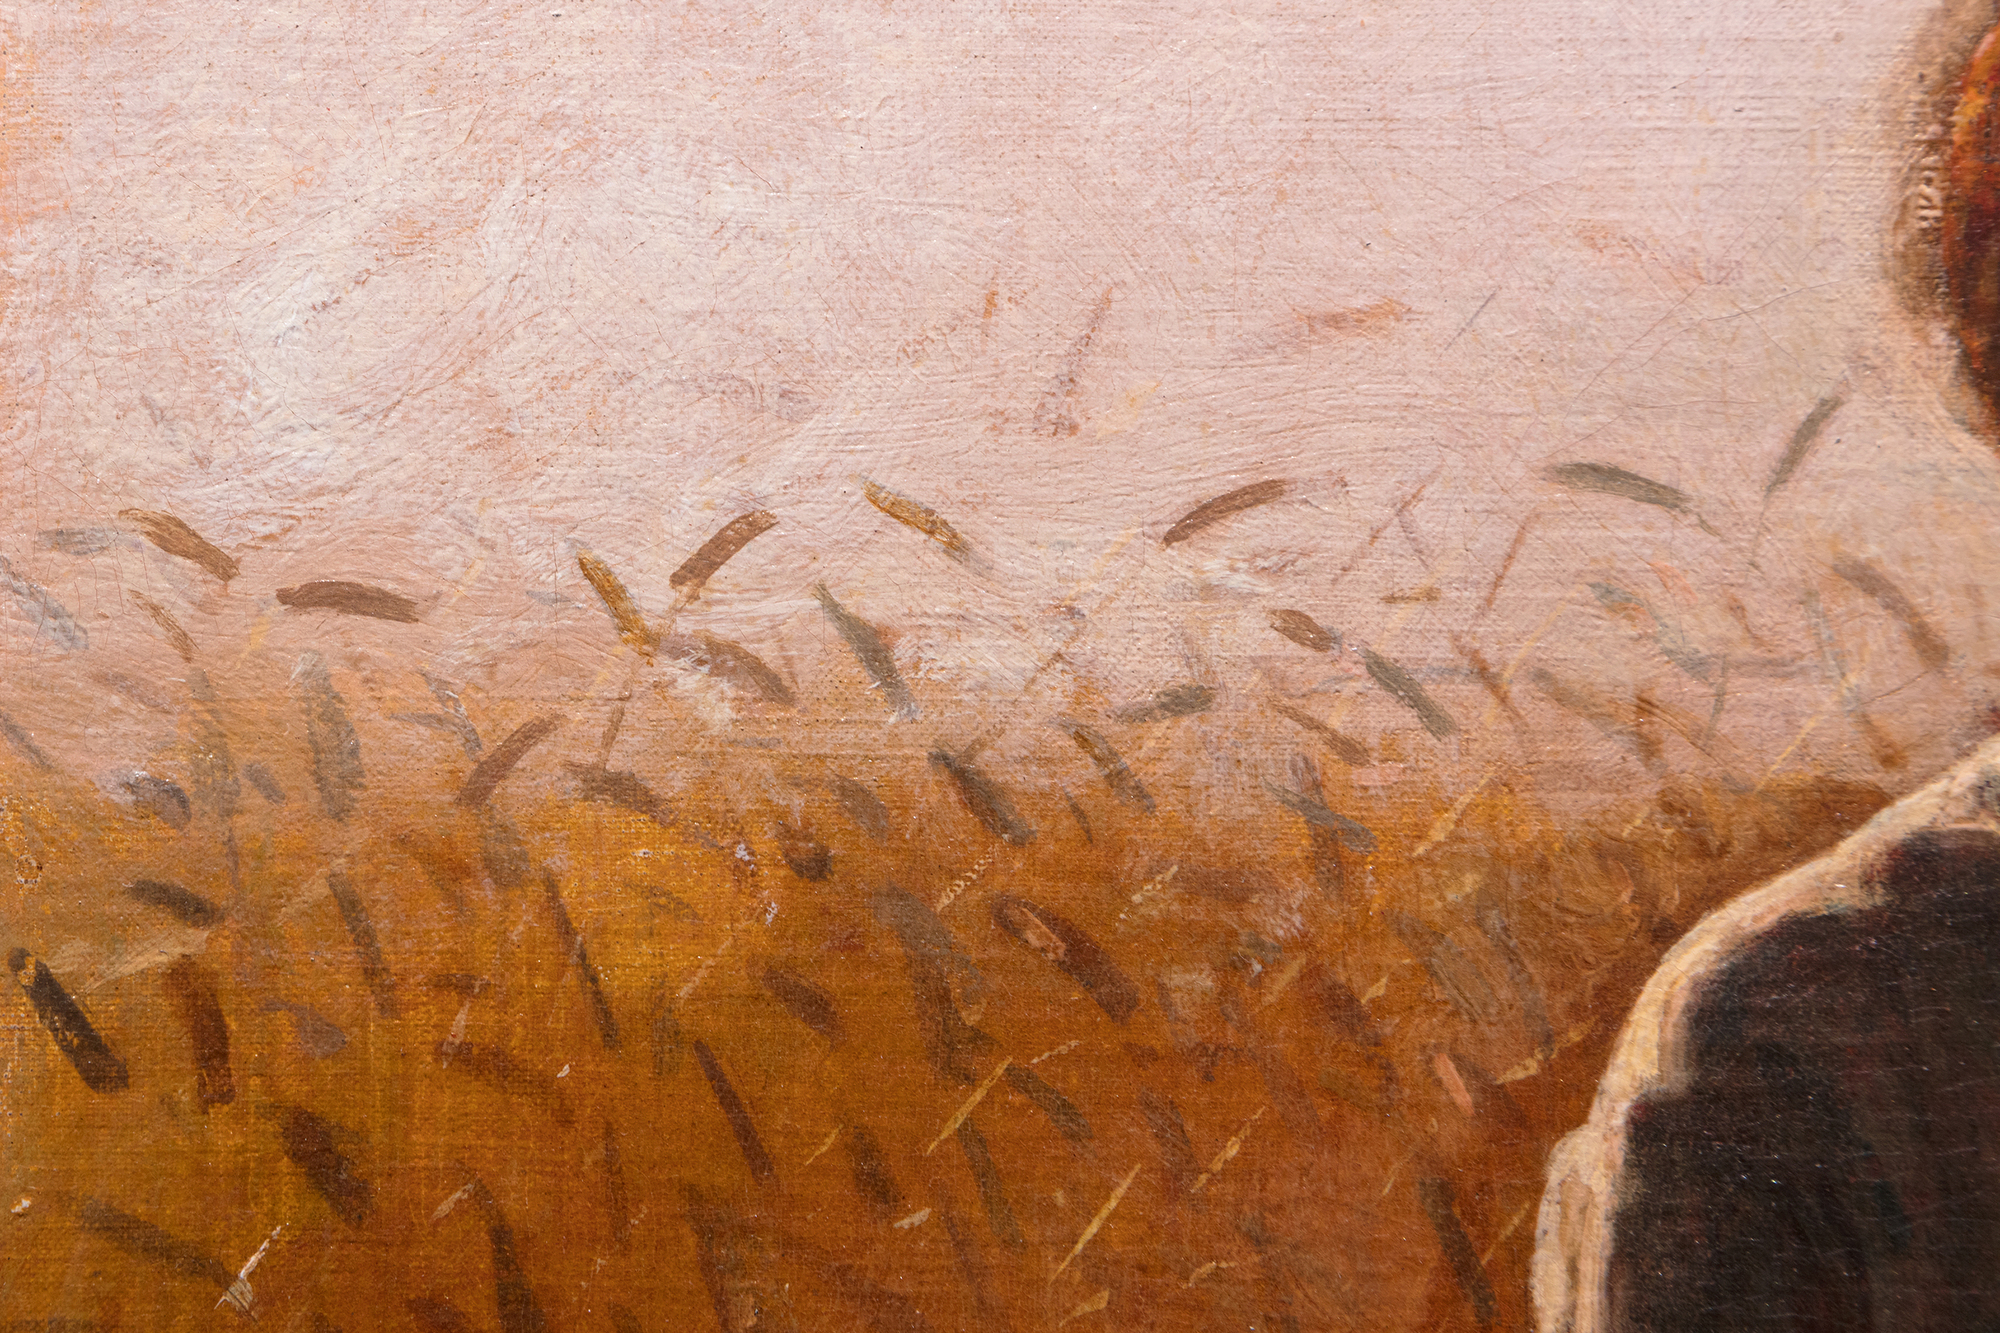 בתחילת שנות ה-70 של המאה ה-19 צייר וינסלו הומר לעתים קרובות סצנות של חיים כפריים ליד כפר חקלאי קטן שנודע במשך דורות בזכות דוכני החיטה המרשימים שלו, הממוקם בין נהר ההדסון לקטסקיל במדינת ניו יורק. כיום הארלי מפורסם הרבה יותר כהשראה לאחת מיצירותיו הגדולות ביותר של הומרוס, Snap the Whip שצויר בקיץ 1872. בין הציורים הרבים האחרים בהשראת האזור, נערה עומדת בשדה החיטה עשירה בסנטימנטים, אך לא סנטימנטלית מדי. הוא מתקשר ישירות למחקר משנת 1866 שצויר בצרפת בשם "בשדות החיטה", ומחקר נוסף שצויר שנה לאחר מכן לאחר שובו לאמריקה. אבל הומרוס היה ללא ספק גאה ביותר בזה. זהו דיוקן, חדר לימוד תלבושות, ציור ז'אנרי במסורת הגדולה של הציור הפסטורלי האירופי, וטור דה פורס מואר בדרמטיות, ספוג באור השעה הזוהר הדועך במהירות, מצופה בתווים פרחוניים ונגיעות קוצים של חיטה. בשנת 1874 שלח הומרוס ארבעה ציורים לתערוכה של האקדמיה הלאומית לעיצוב. אחד מהם נקרא "ילדה". יכול להיות שזה לא זה?